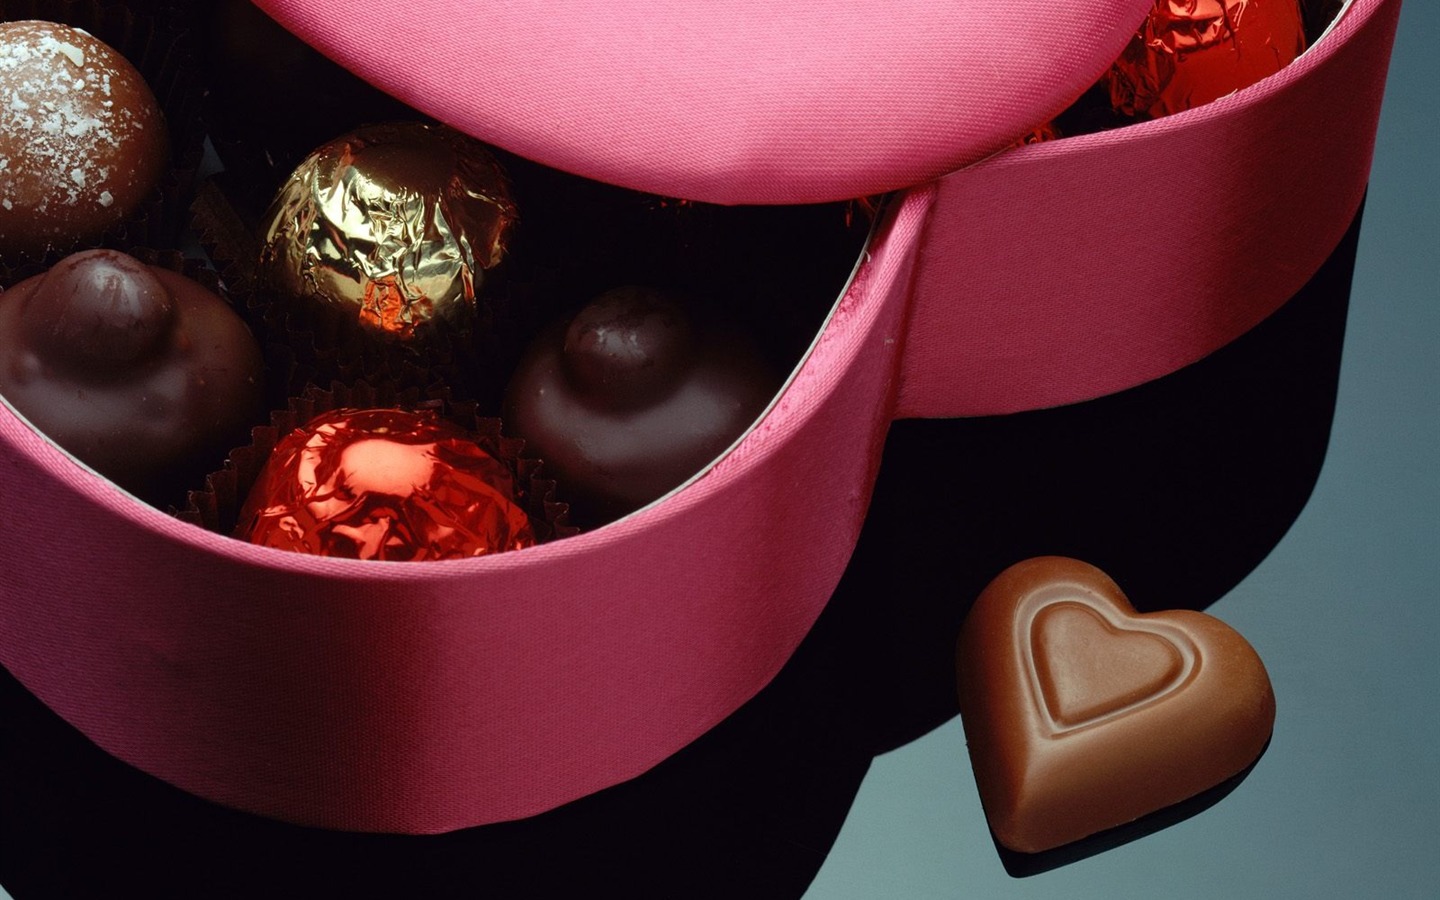 Le indélébile Saint Valentin au chocolat #2 - 1440x900